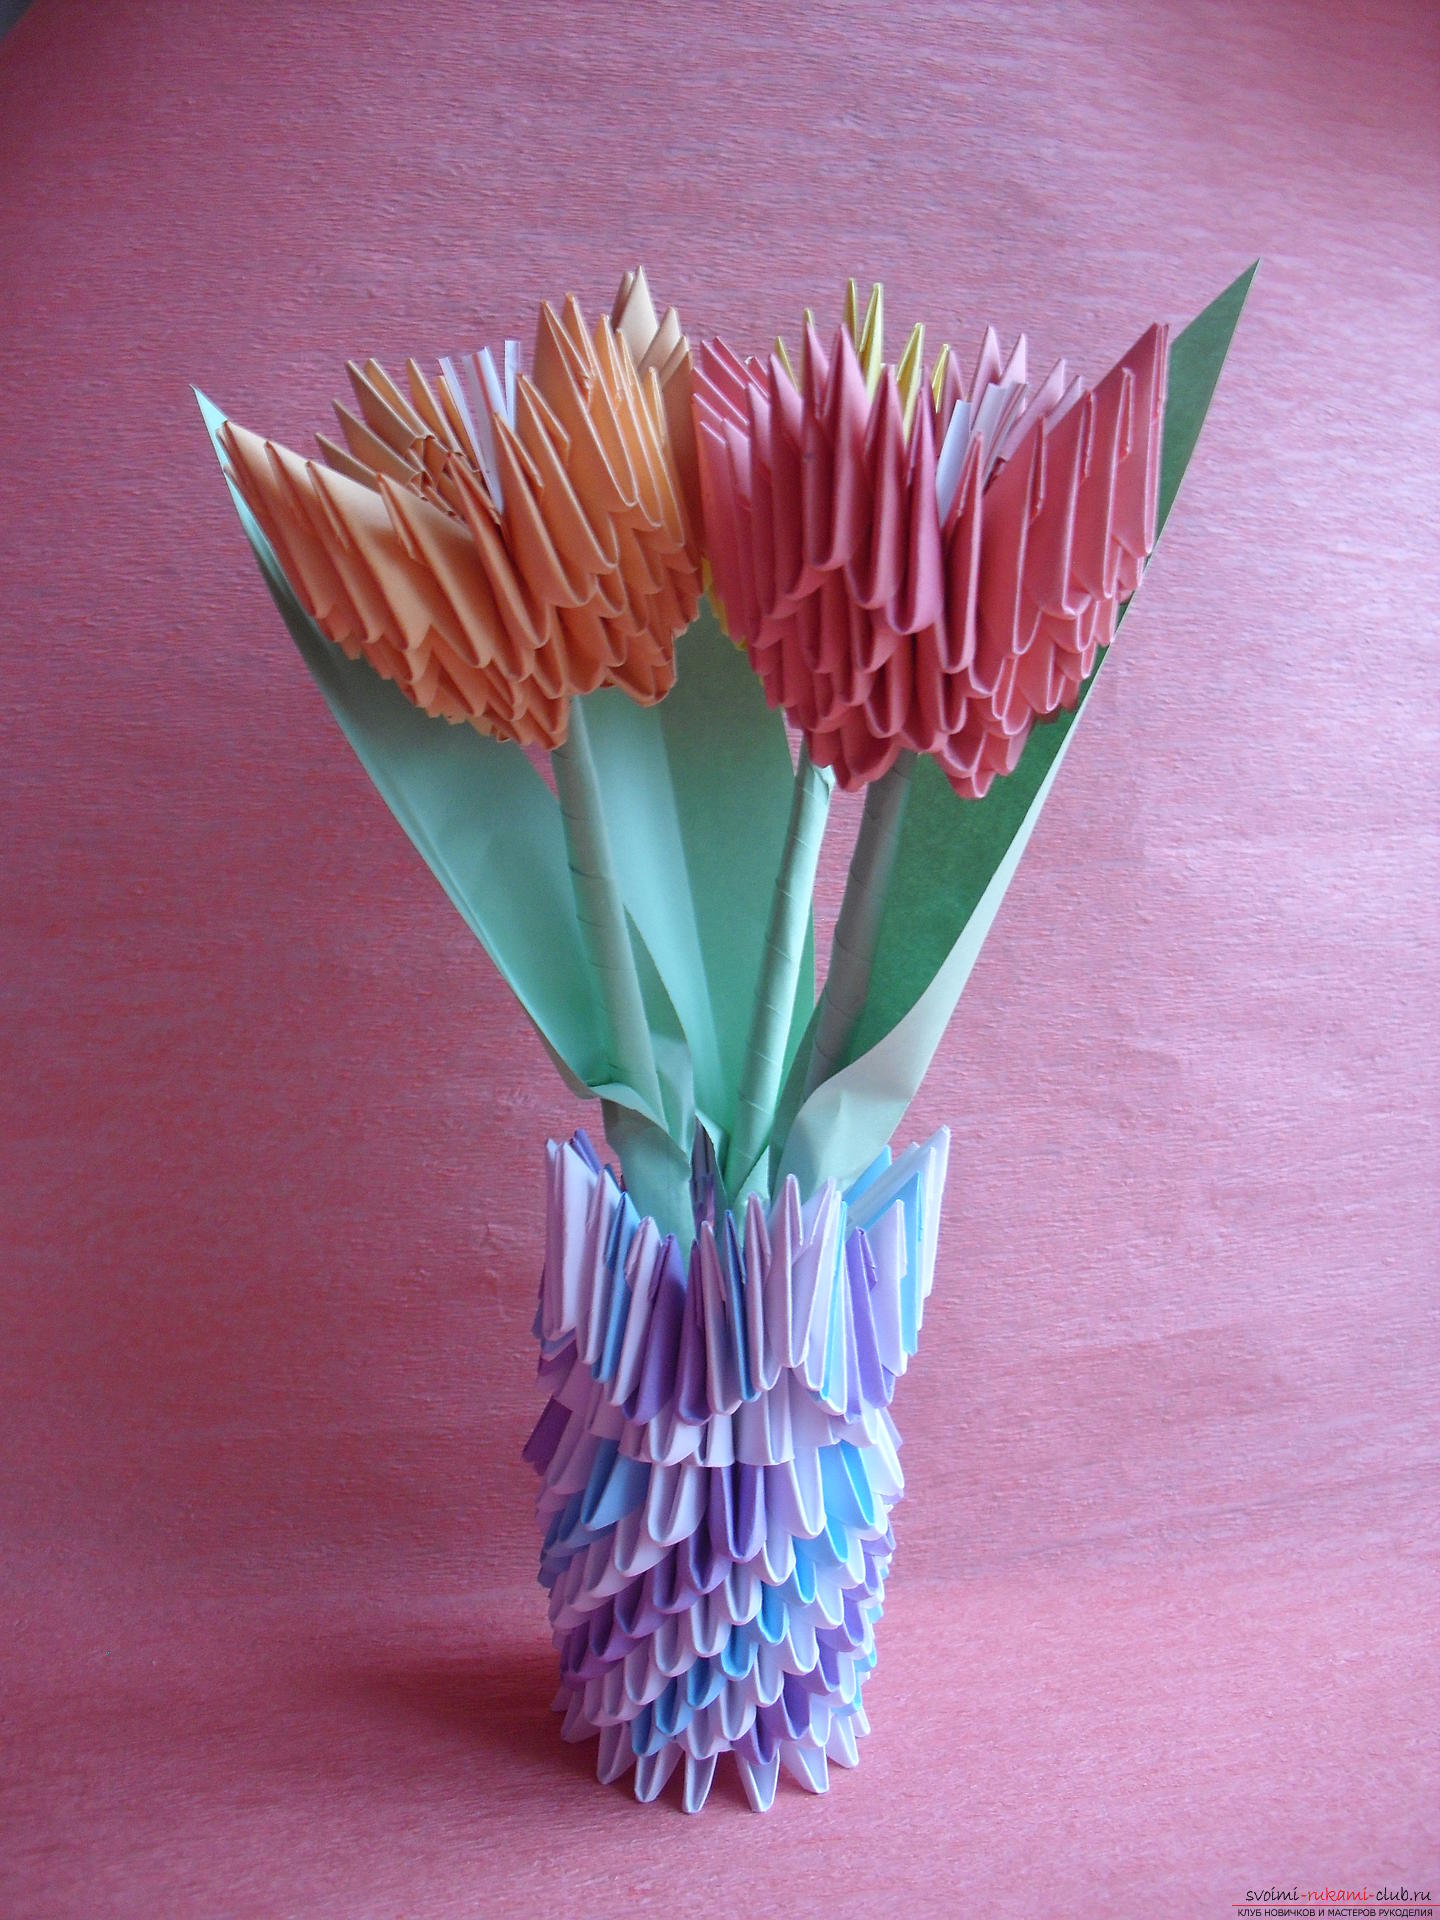 Этот мастер-класс научит как сделать вазу с тюльпанами из бумаги в технике модульного оригами.. Фото №1